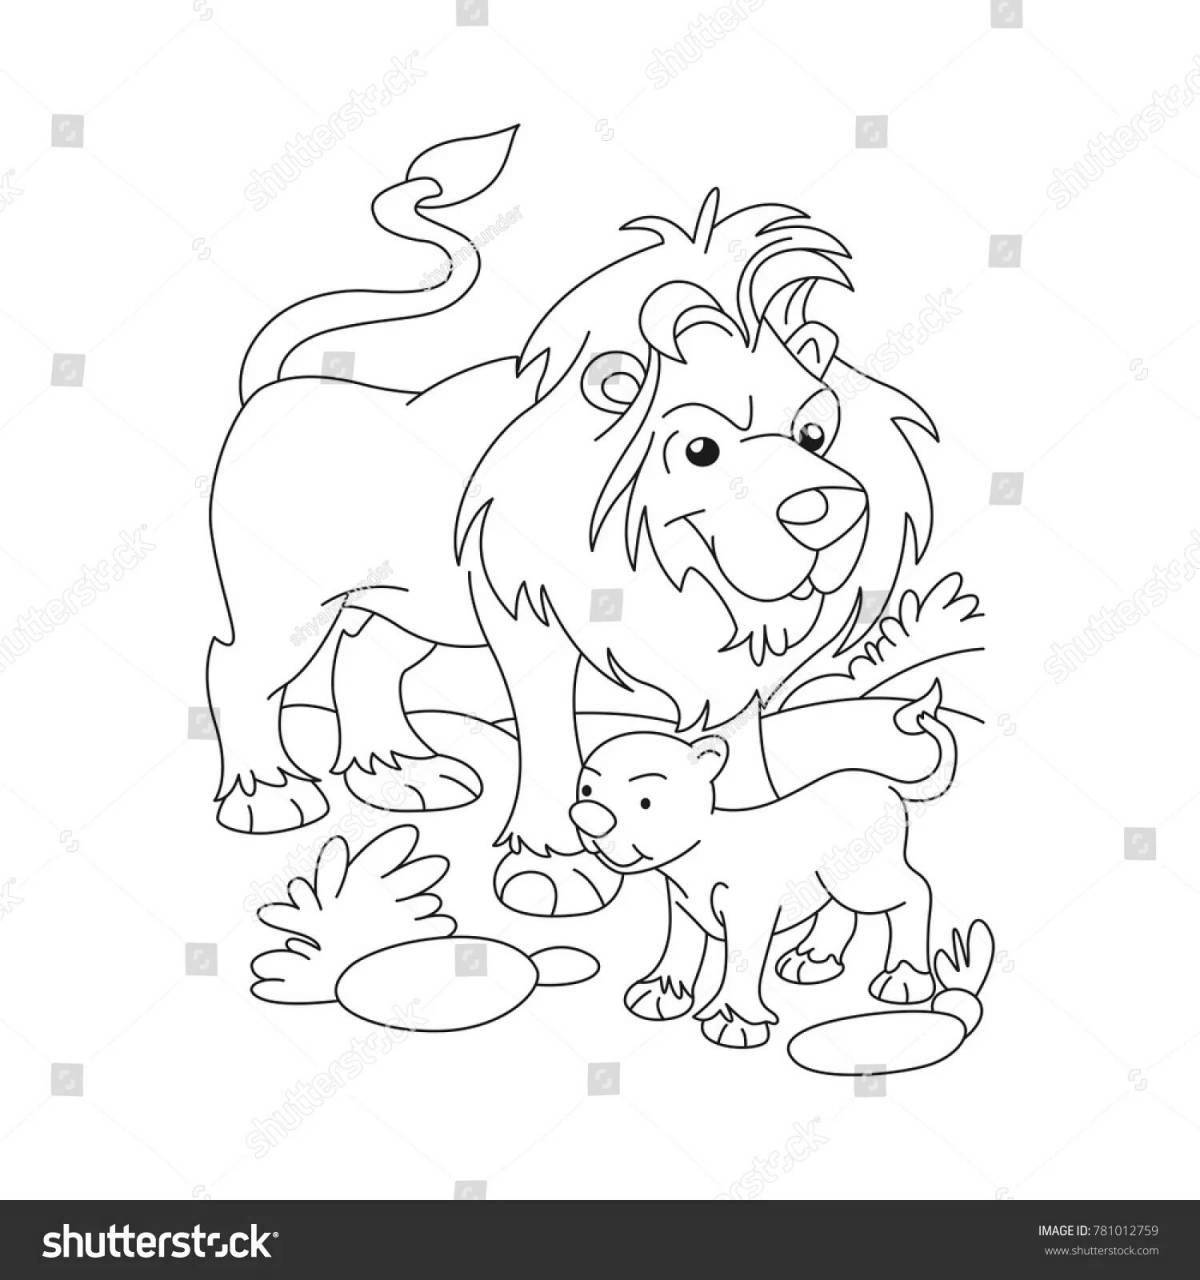 Gracious lion coloring page